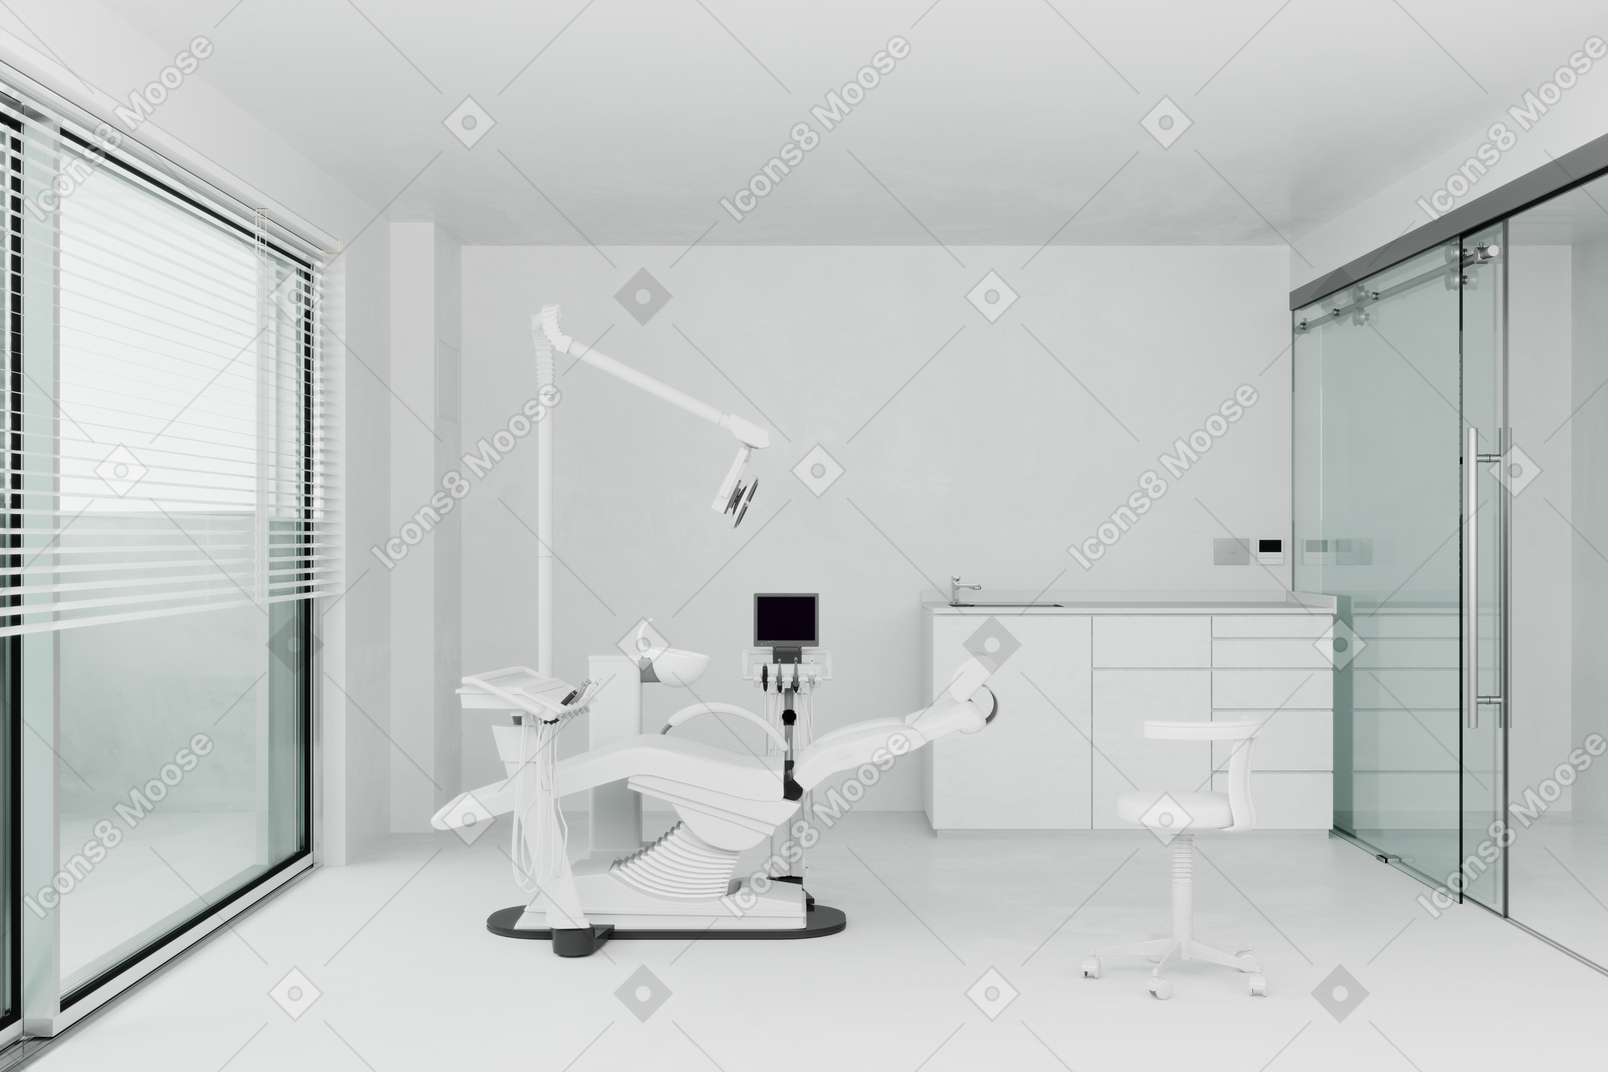 Современный кабинет дантиста с медицинским оборудованием